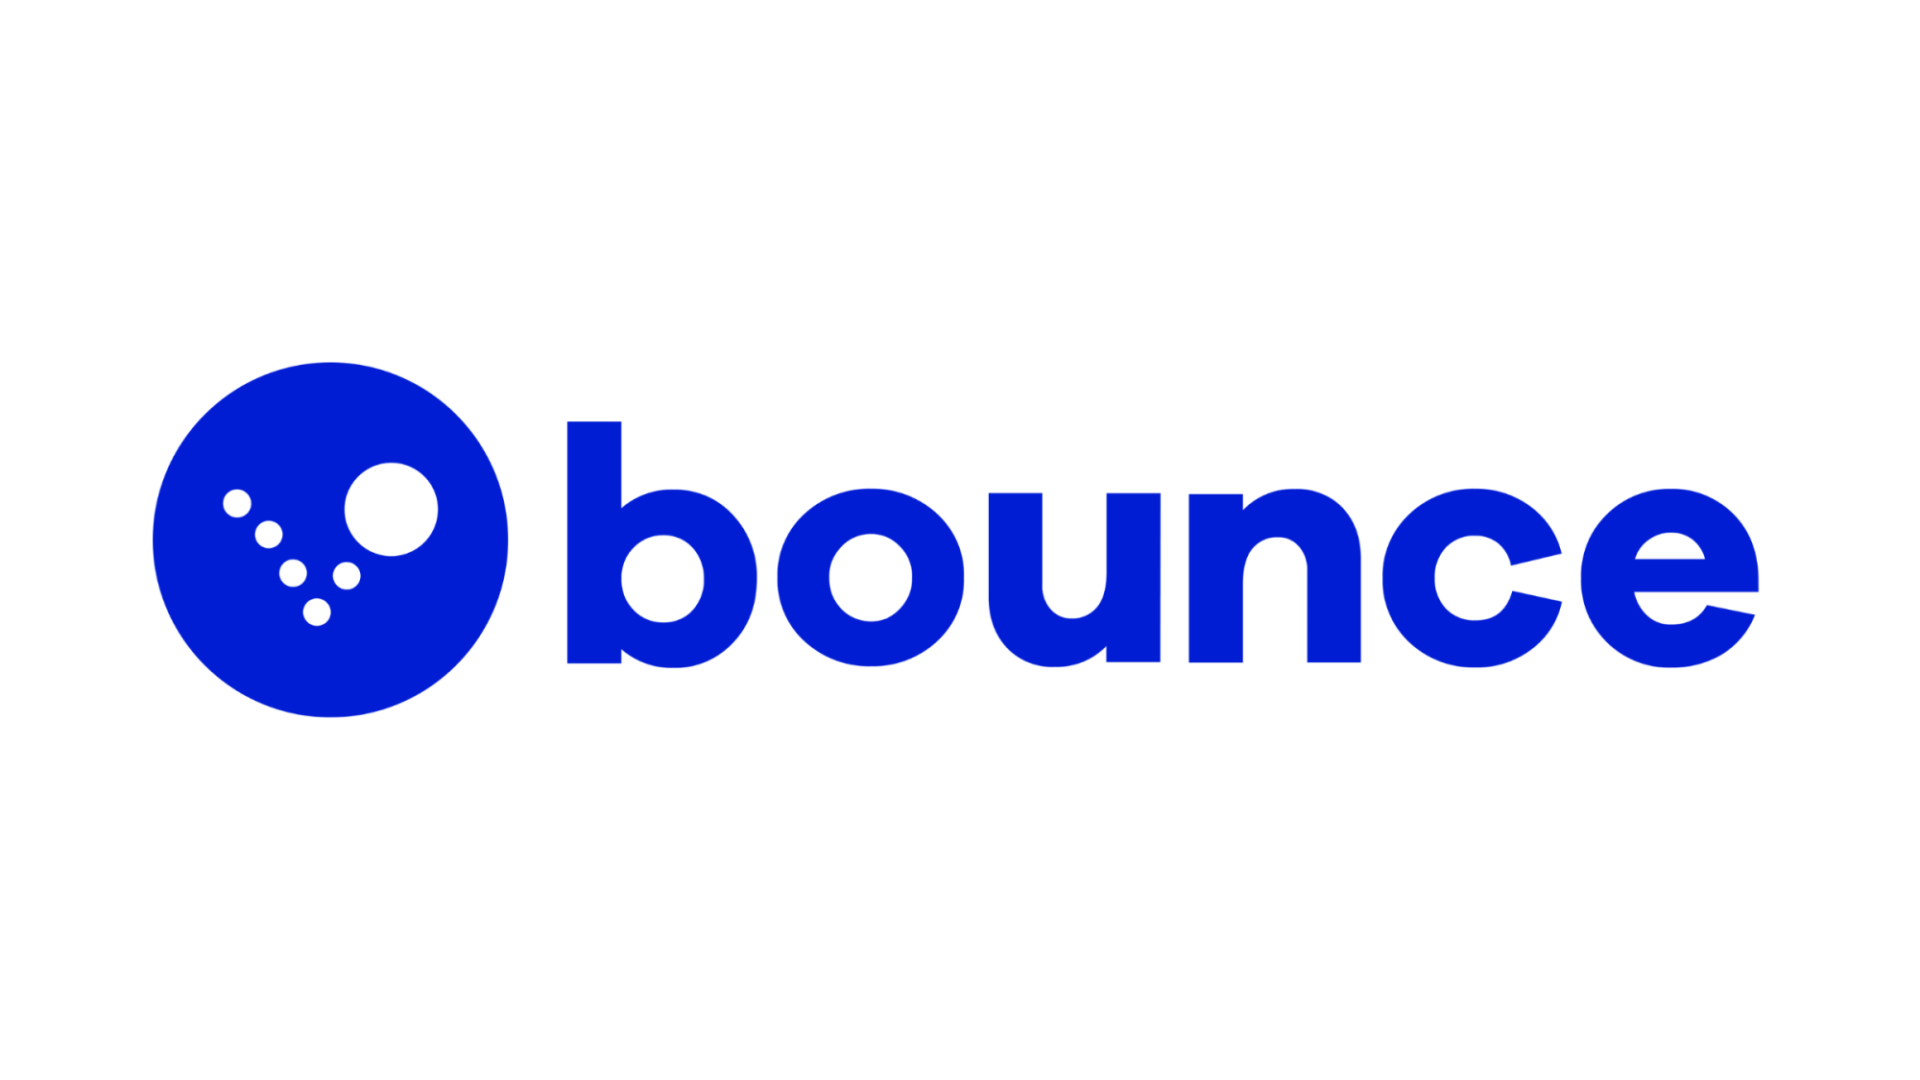 image of blue bounce logo on white background